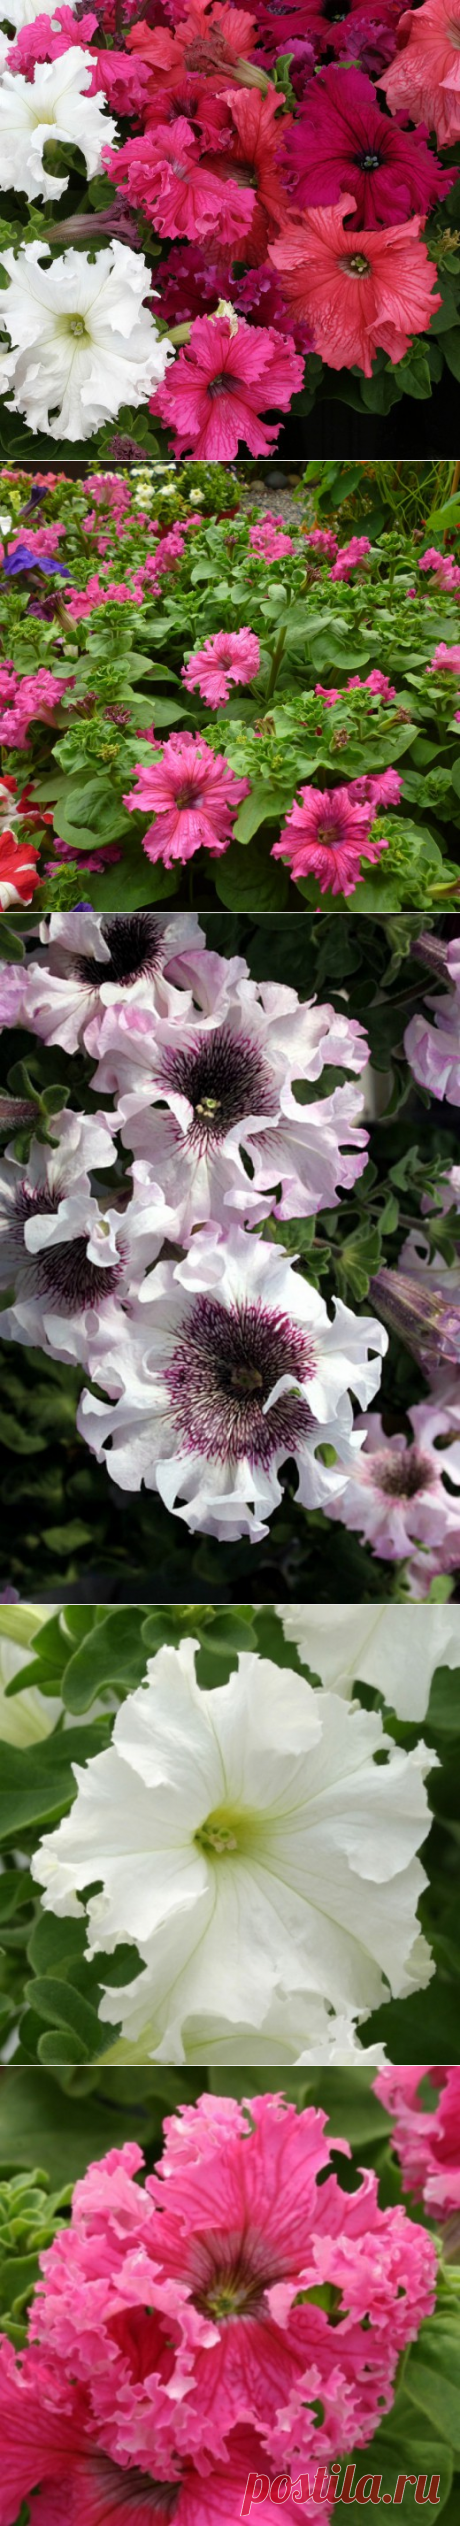 Фриллитунии — петунии с огромными цветками